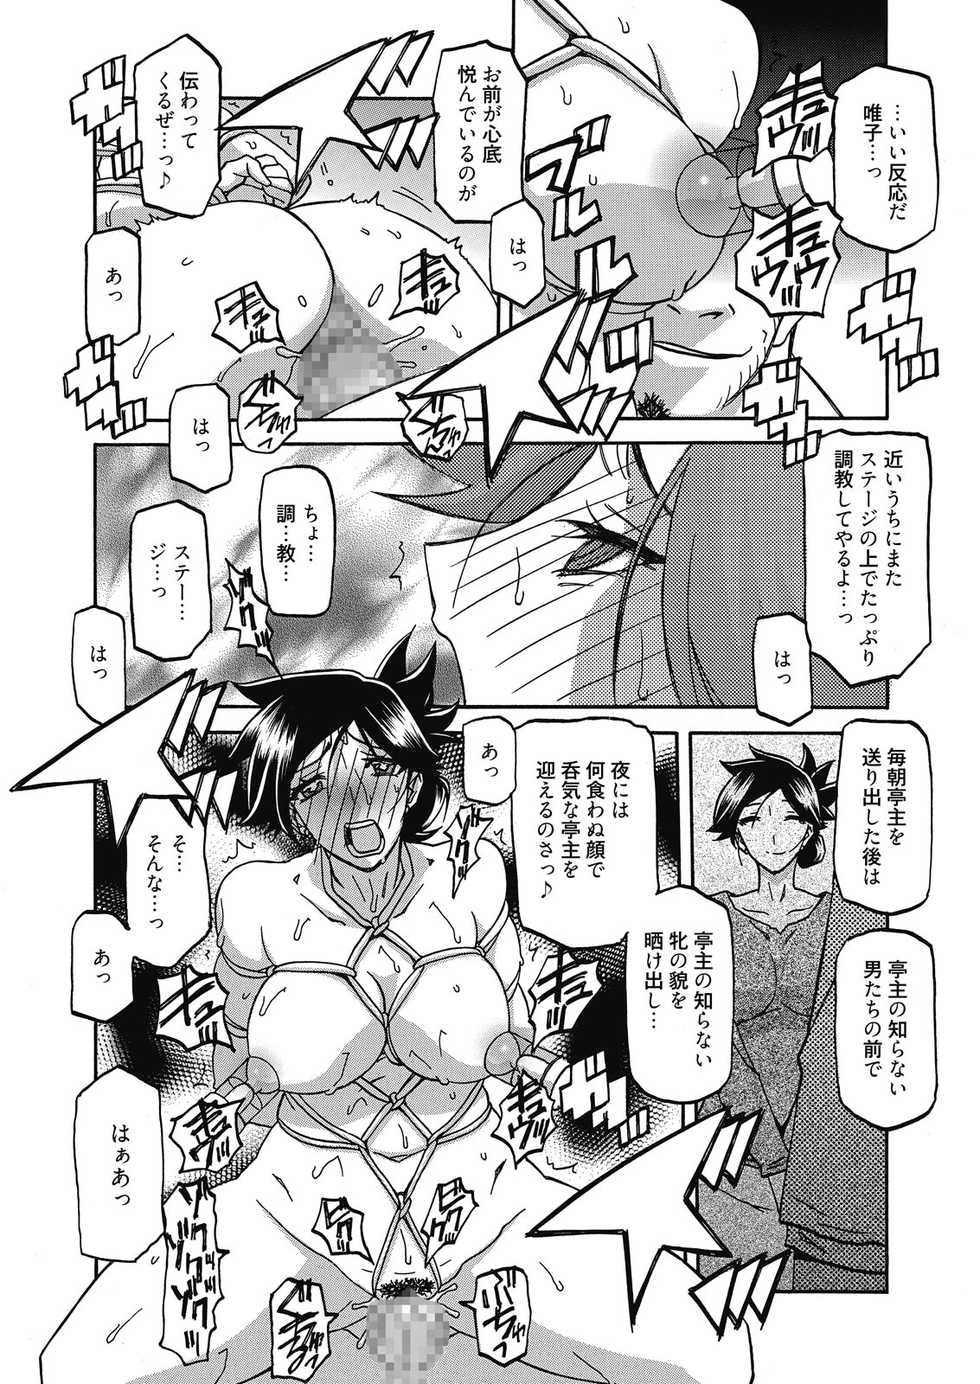 Web Manga Bangaichi Vol. 10 - Page 40